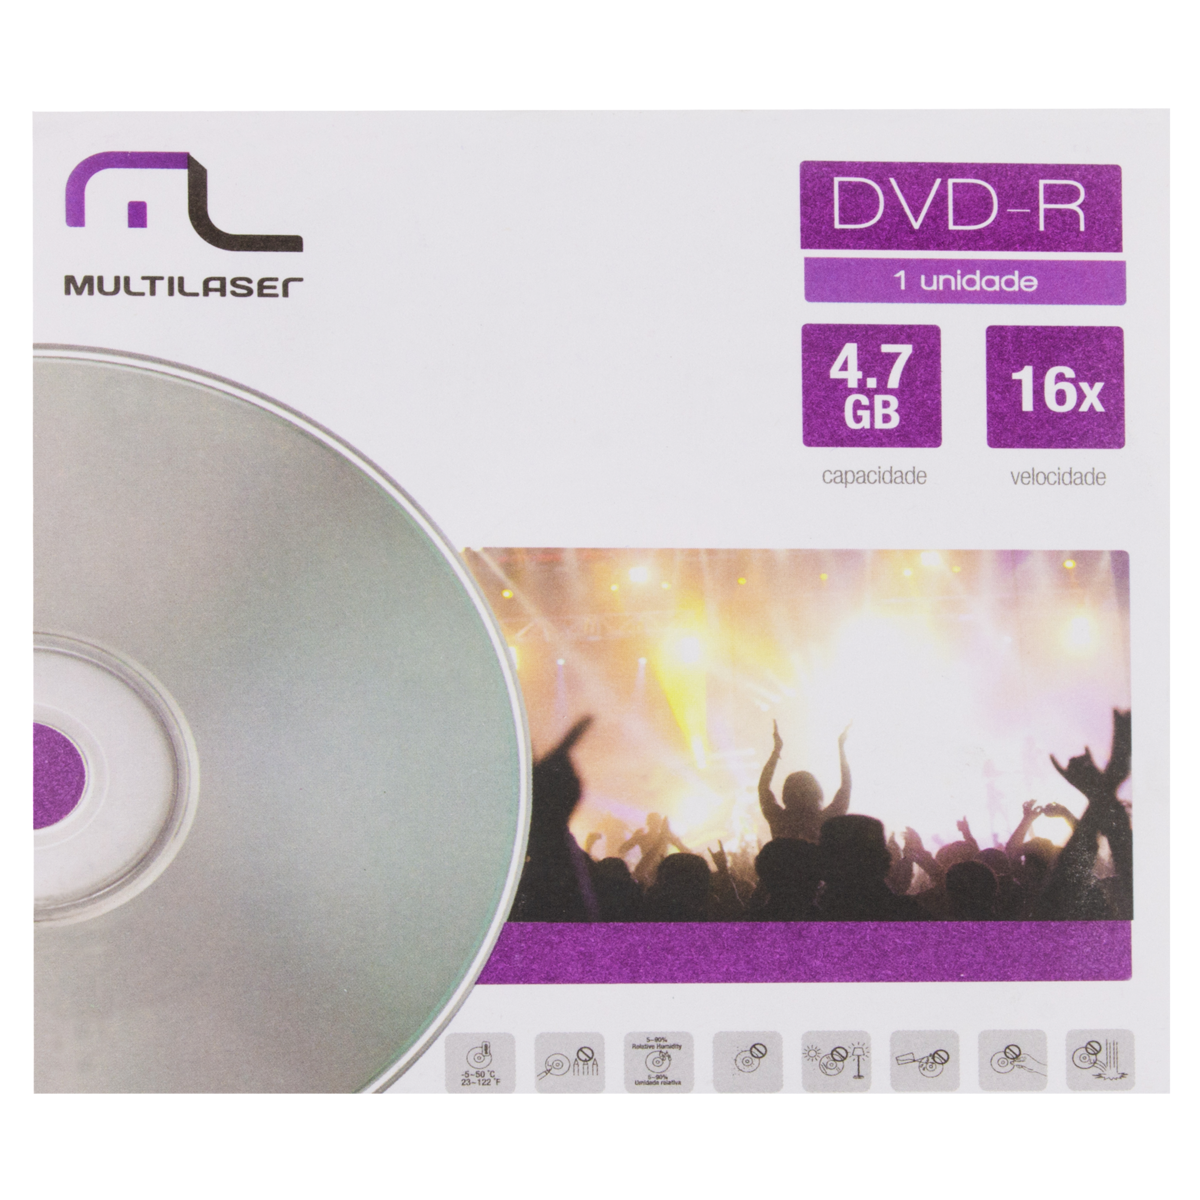 7898149186814 - MÍDIA DVD-R DV018 4,7GB MULTILASER